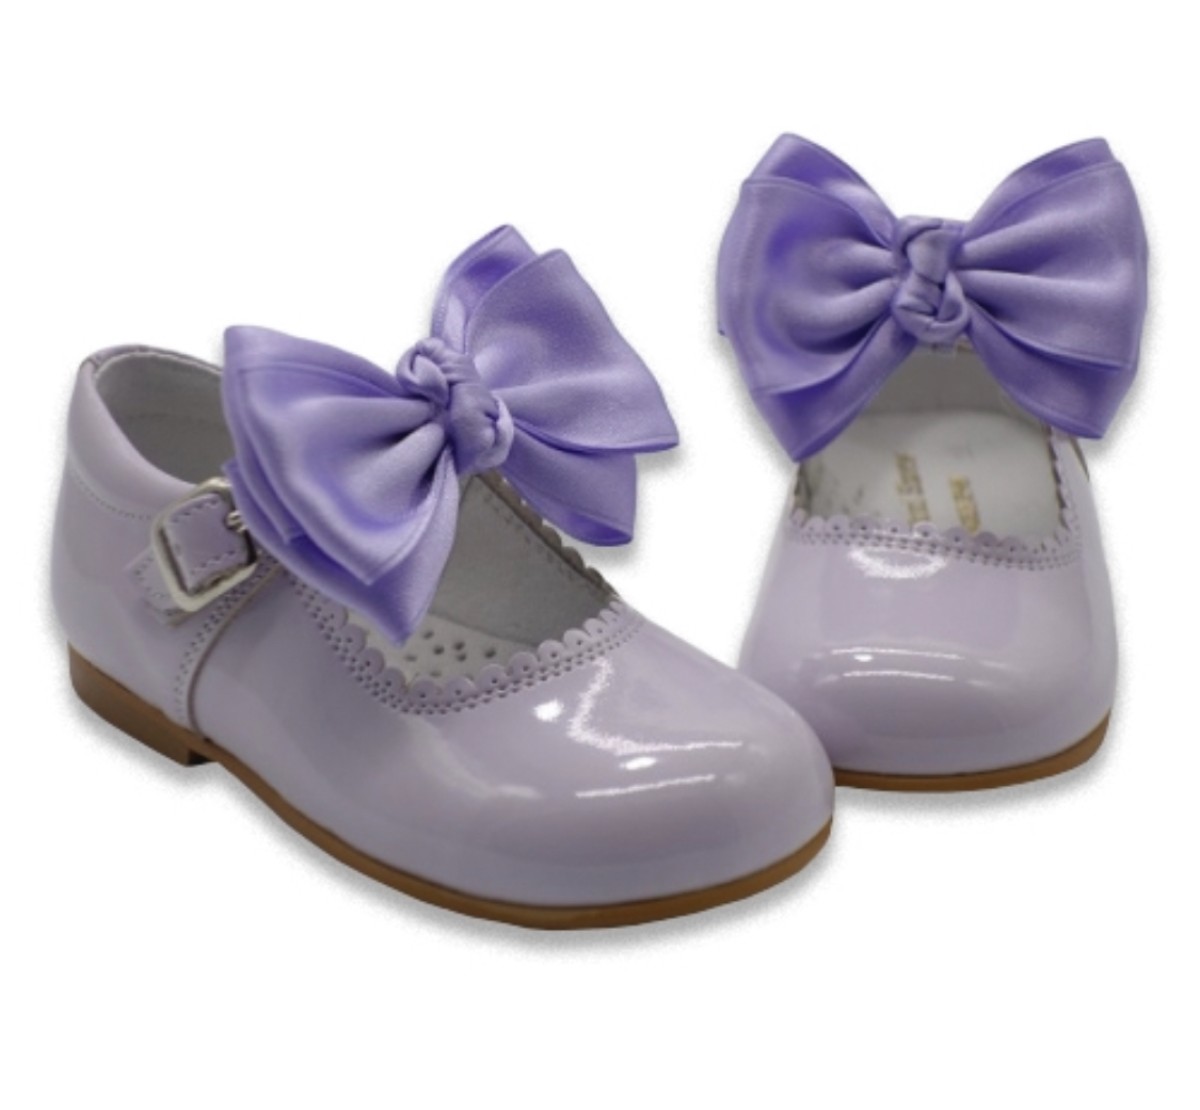 purple mary jane shoes uk